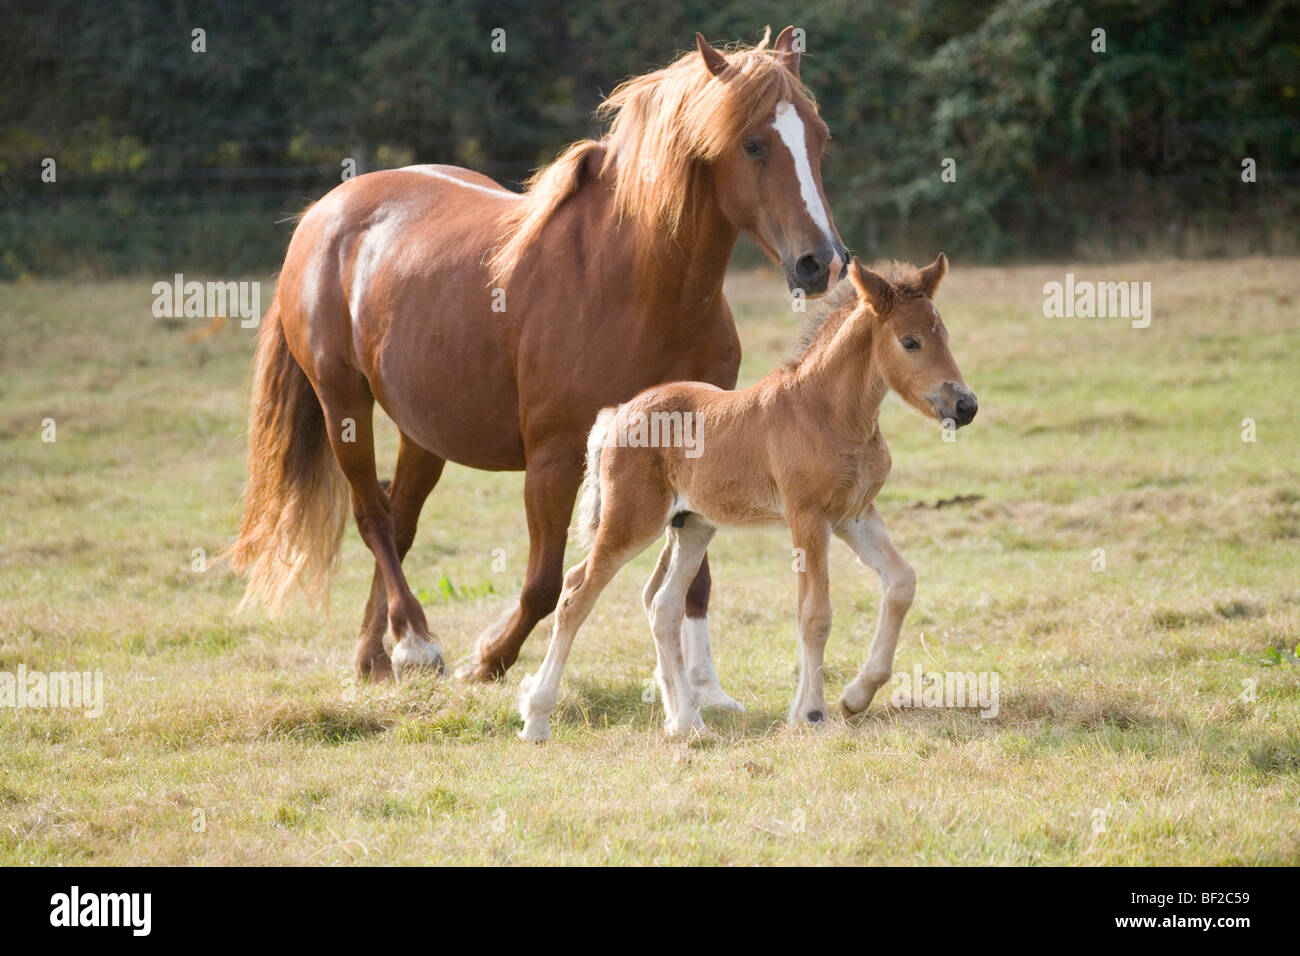 Mare und drei Wochen altes Fohlen (Equus ferus). Inländische reiten Pferde. Trab neben einander. Stockfoto